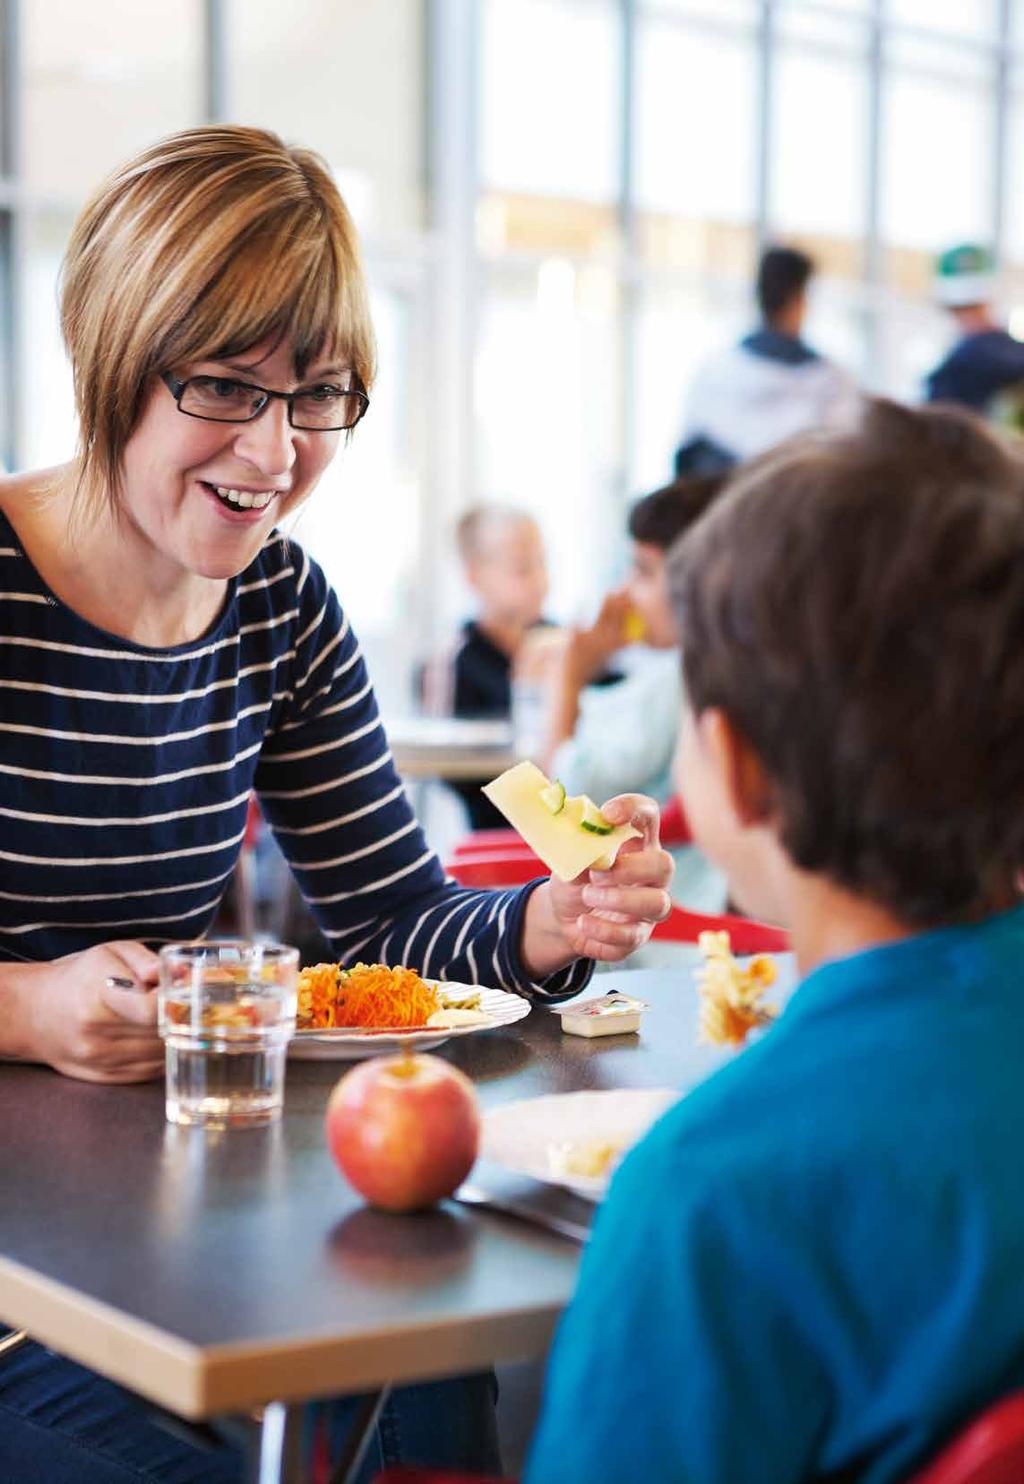 Elever och vuxna som tillsammans kan njuta av bra måltider i en trevlig miljö kan vara